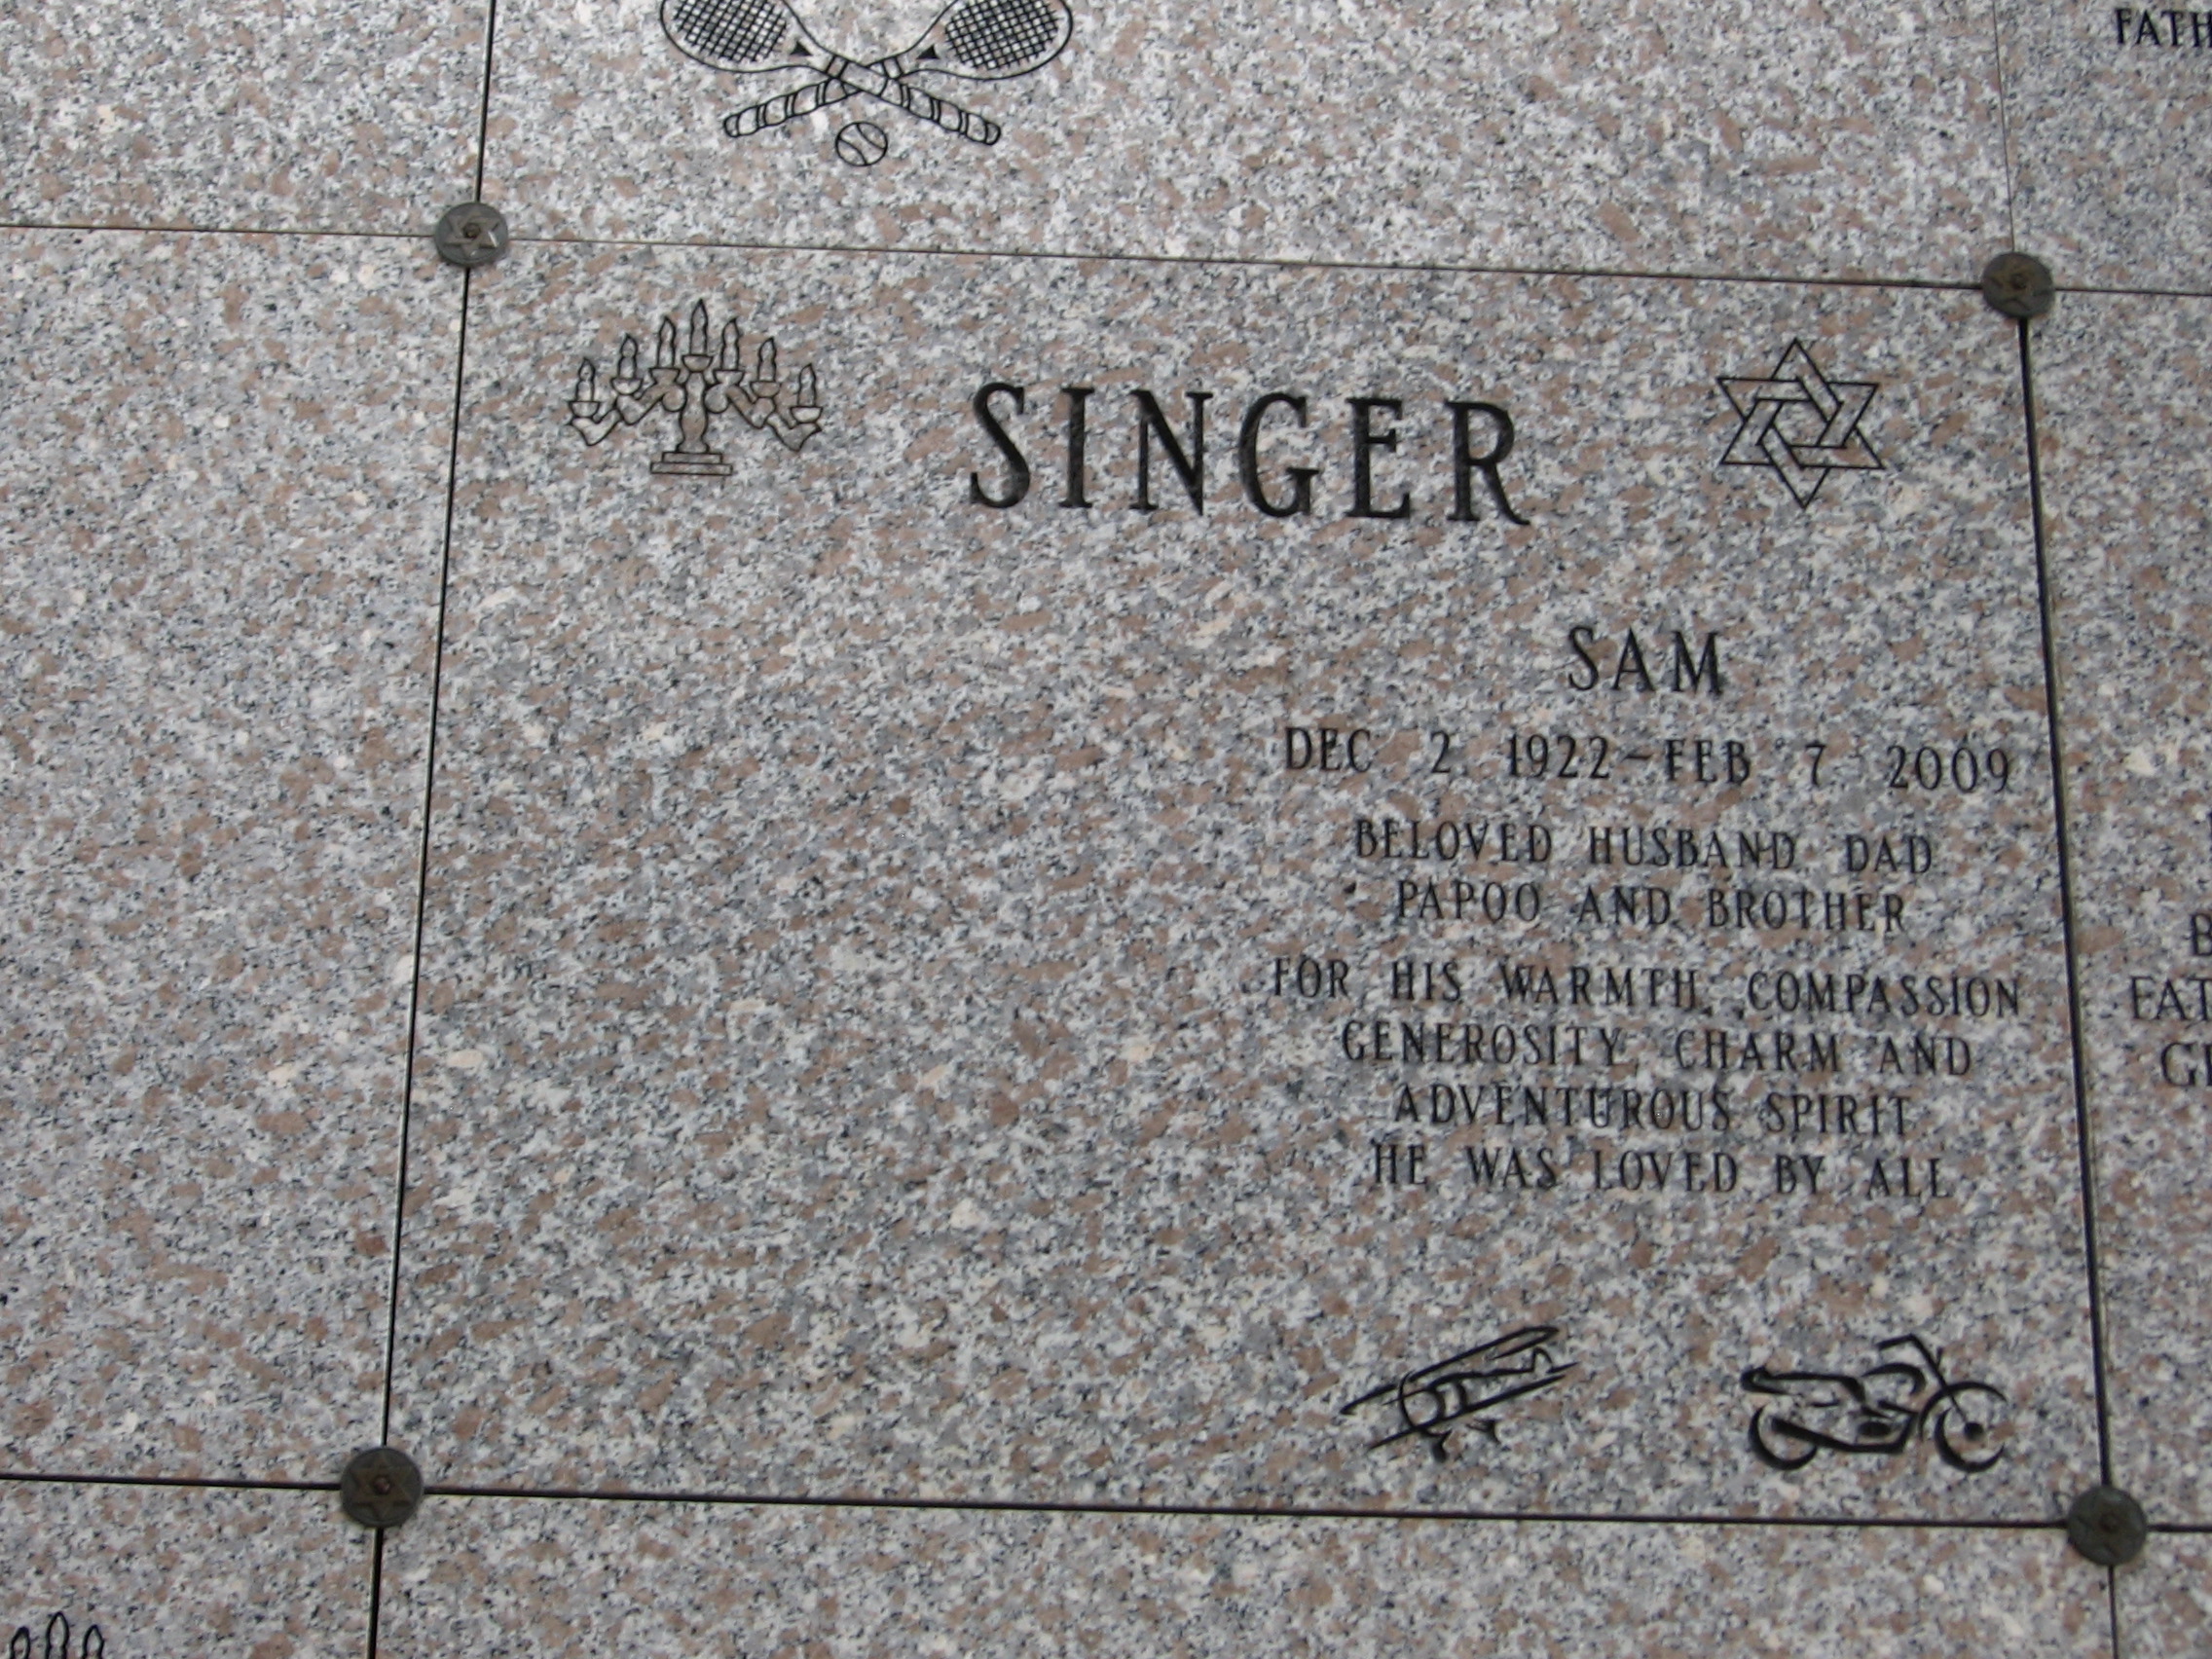 Sam Singer